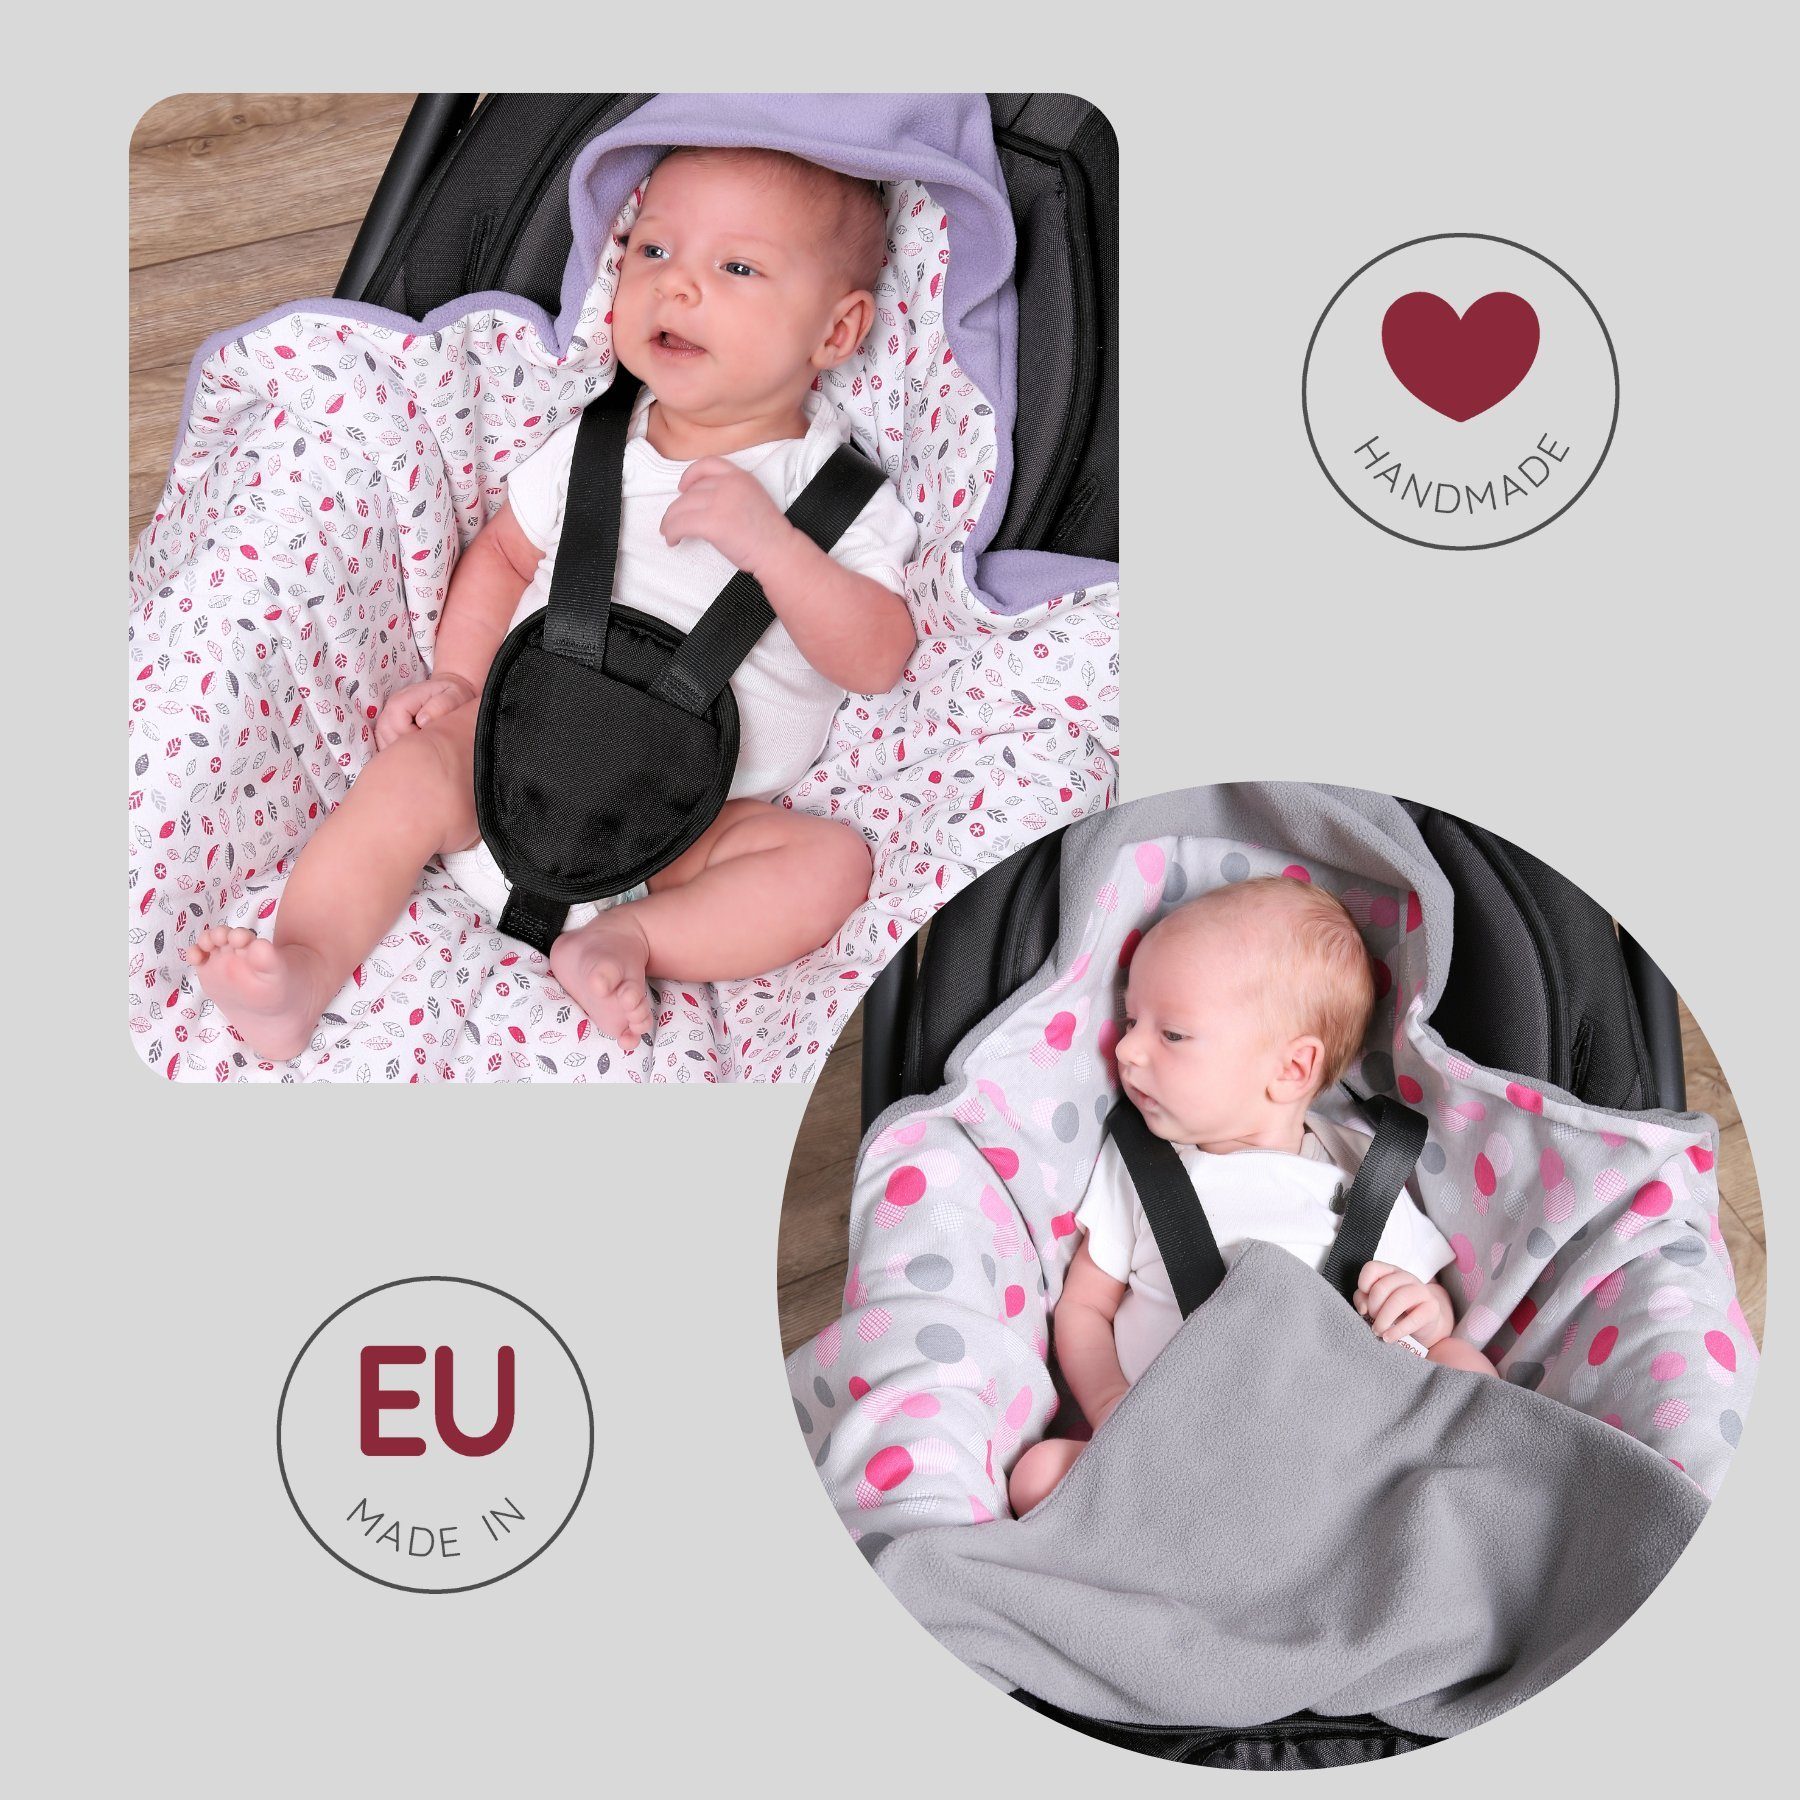 Punkt HOBEA-Germany, Babyschale Sommer, Babyschale grün/Streifen für für Babyschalendecke 3 die Fußsack Einschlagdecke